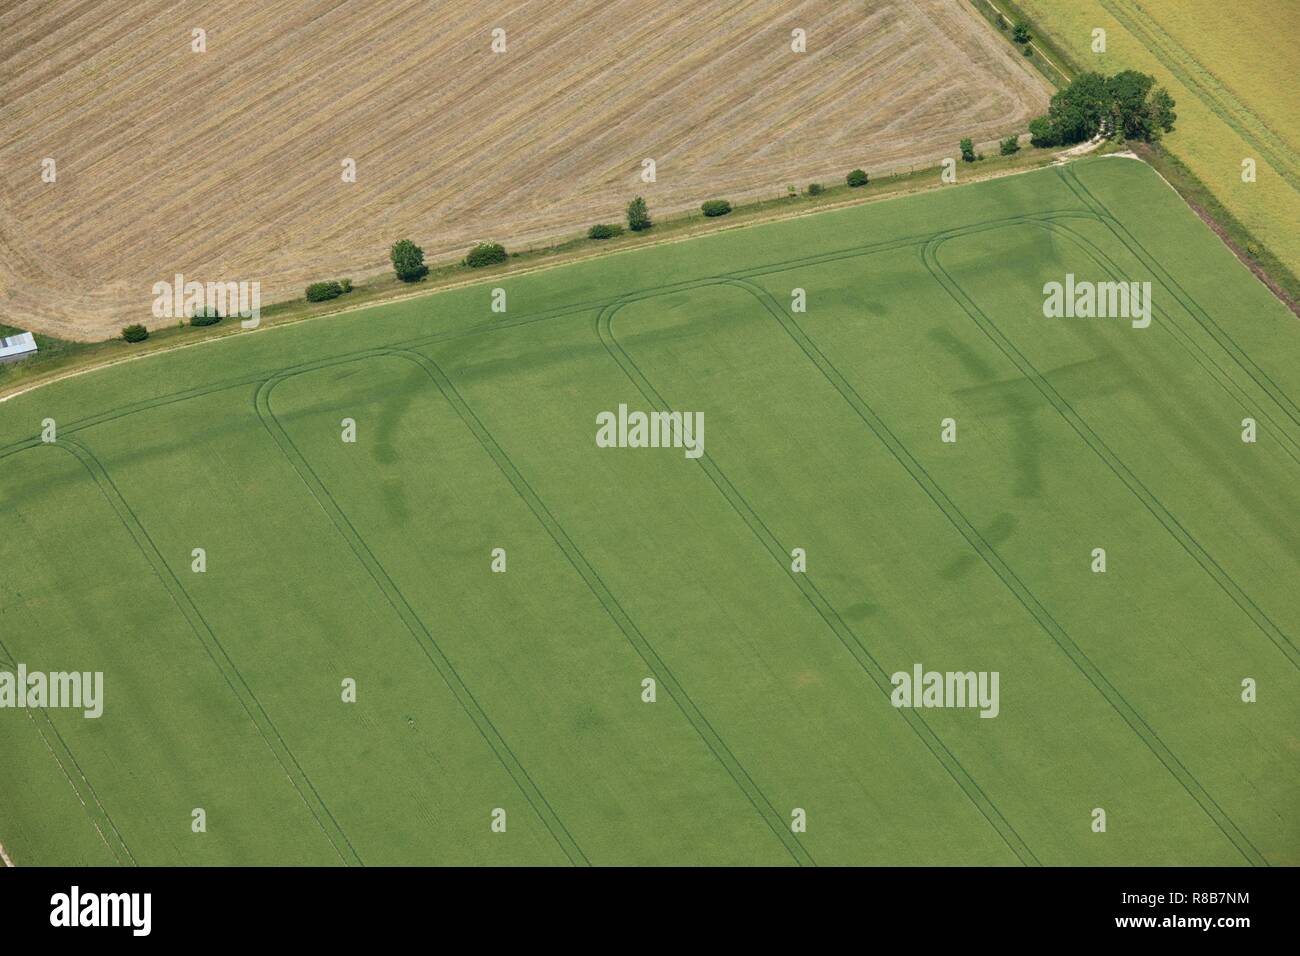 Später vorgeschichtliche kreisförmige causewayed Enclosures oder Henge, in der Nähe der neuen Farm, Cambridgeshire, 2014. Schöpfer: Historisches England Fotograf. Stockfoto